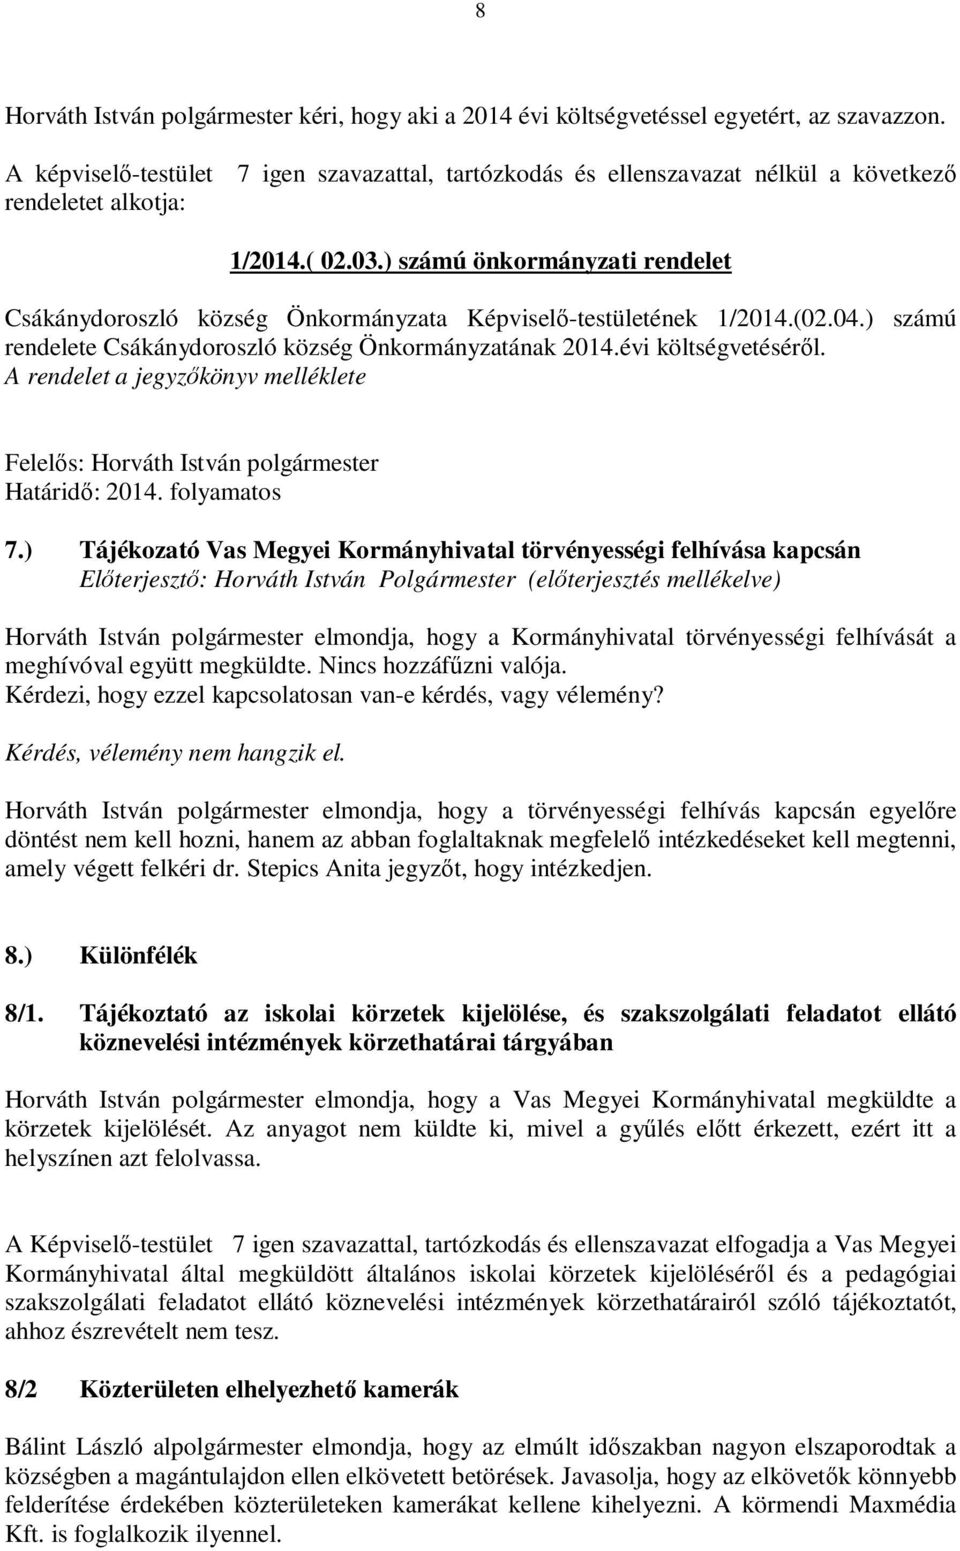 ) számú önkormányzati rendelet Csákánydoroszló község Önkormányzata Képviselő-testületének 1/2014.(02.04.) számú rendelete Csákánydoroszló község Önkormányzatának 2014.évi költségvetéséről.